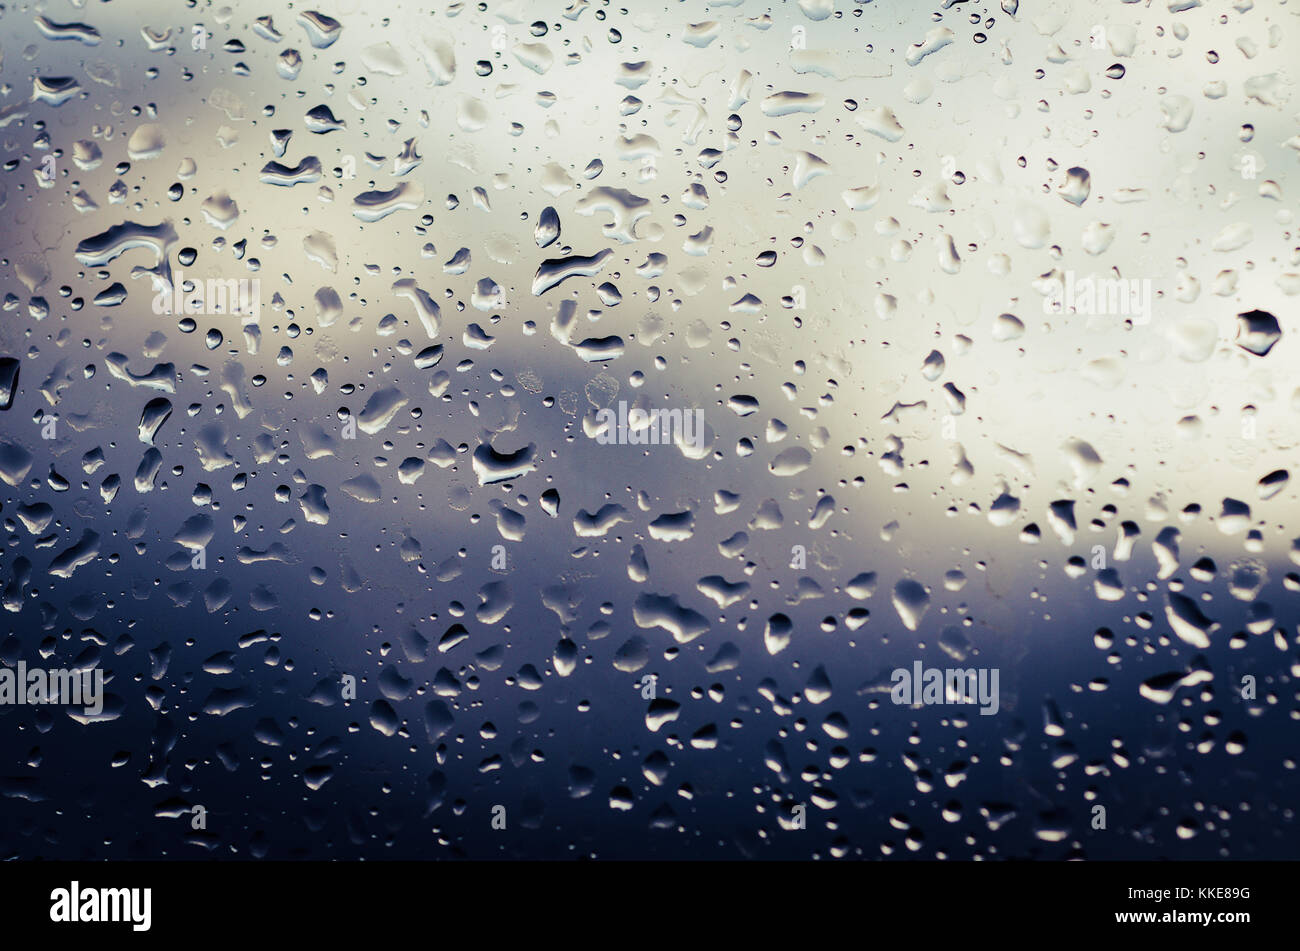 Rainy wet background Stock Photo